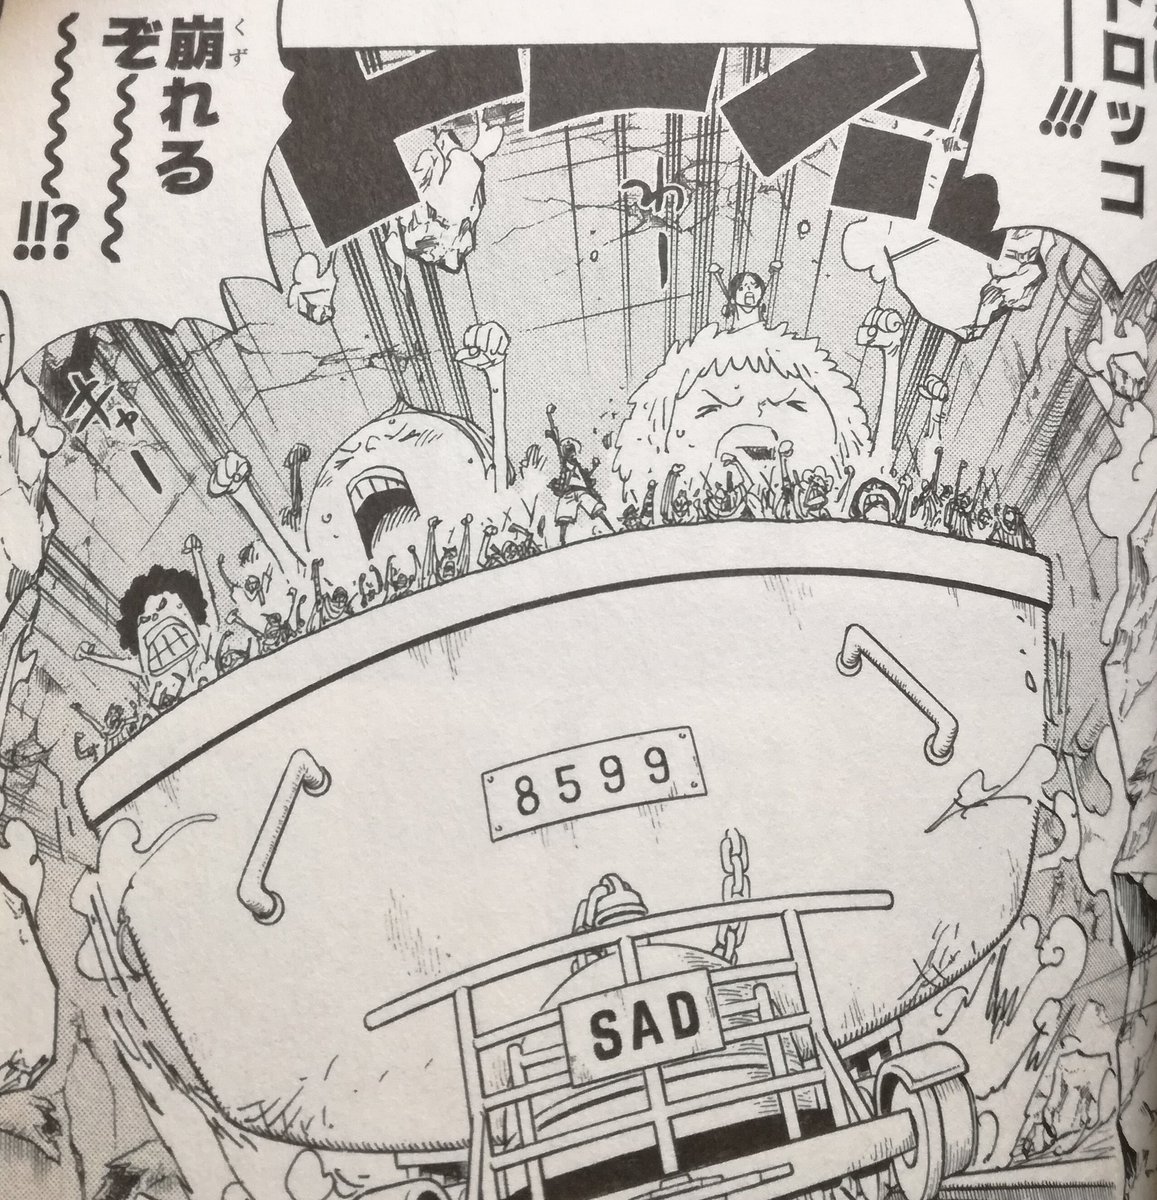 One Pieceが大好きな神木 スーパーカミキカンデ 8599 こういうとこ細かいですよね Sad を運ぶトロッコっていうのは説明があったけど 数あるタンク それぞれに番号がある の中でも このタンクのsadを運ぶためのトロッコですよっていう